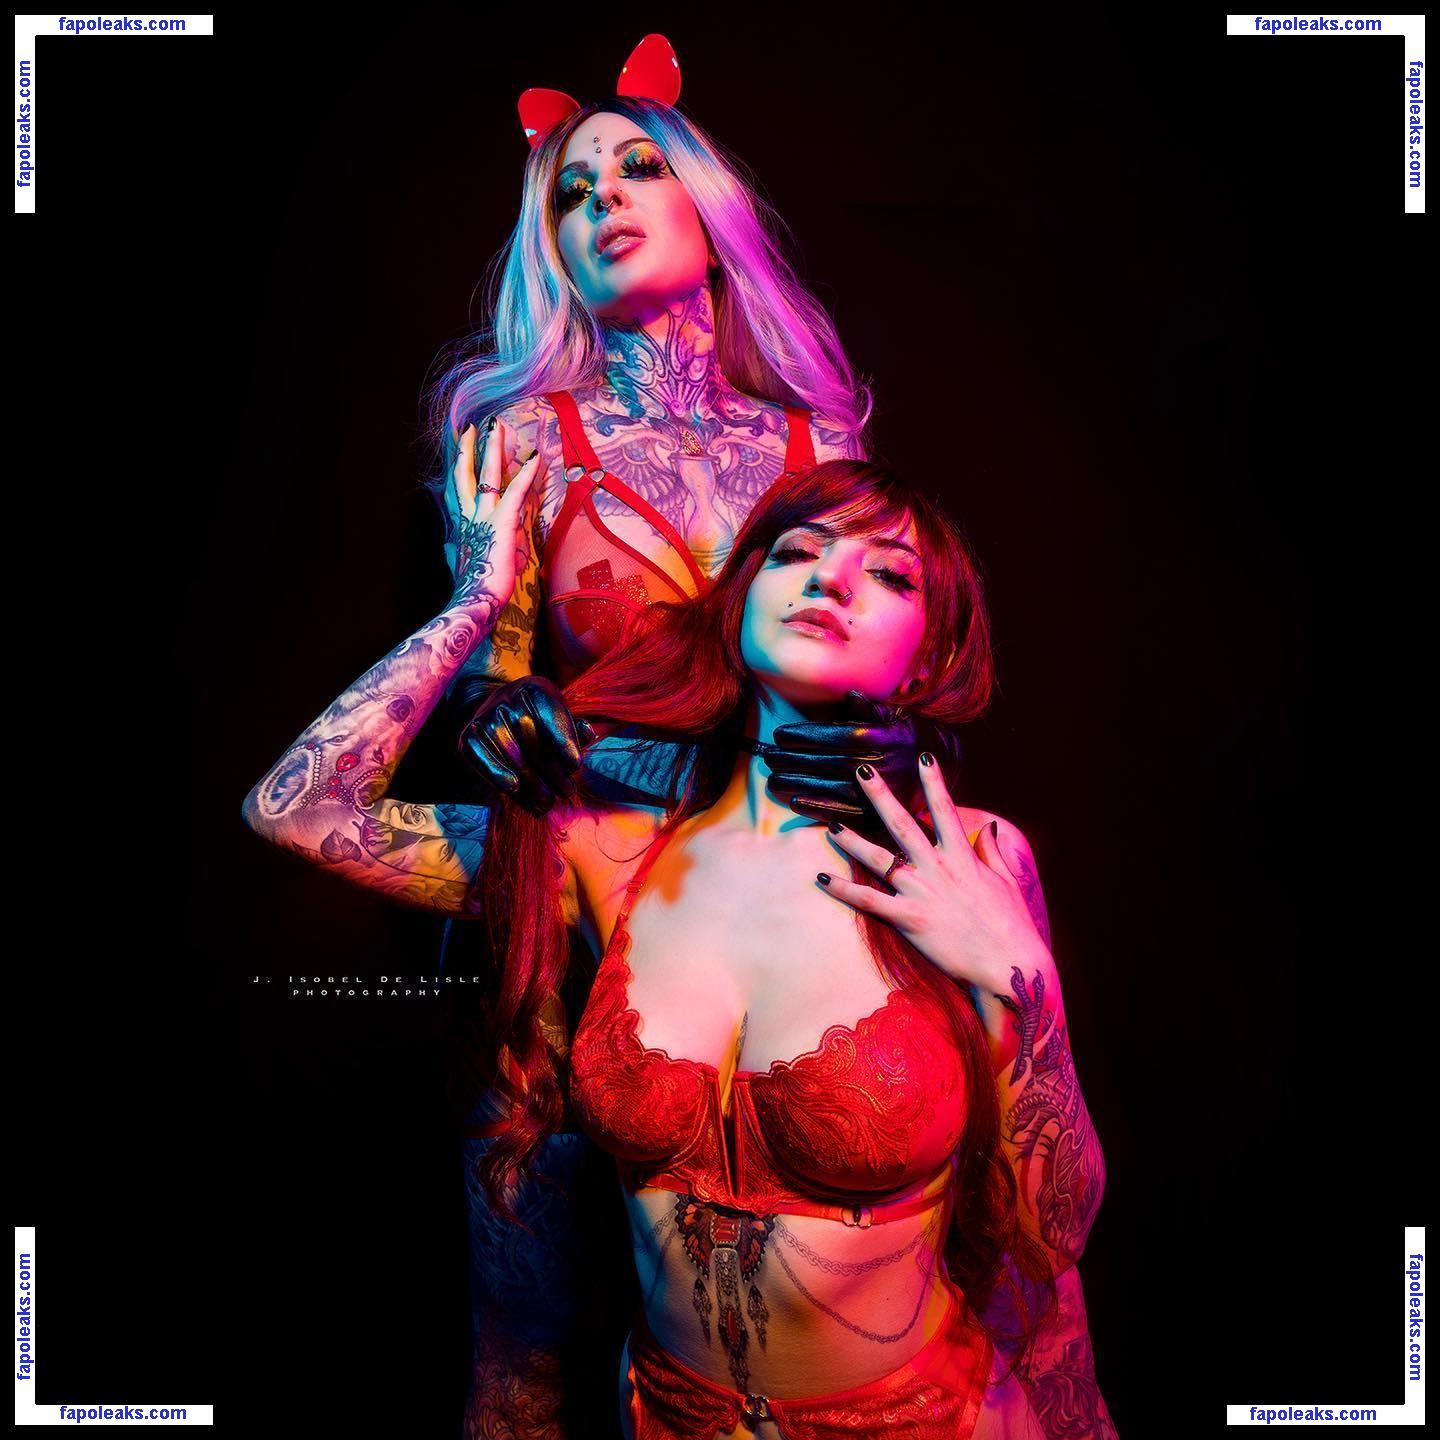 Hitoriookami / Vanessa Luciano / eroticmedusa nude photo #0021 from OnlyFans